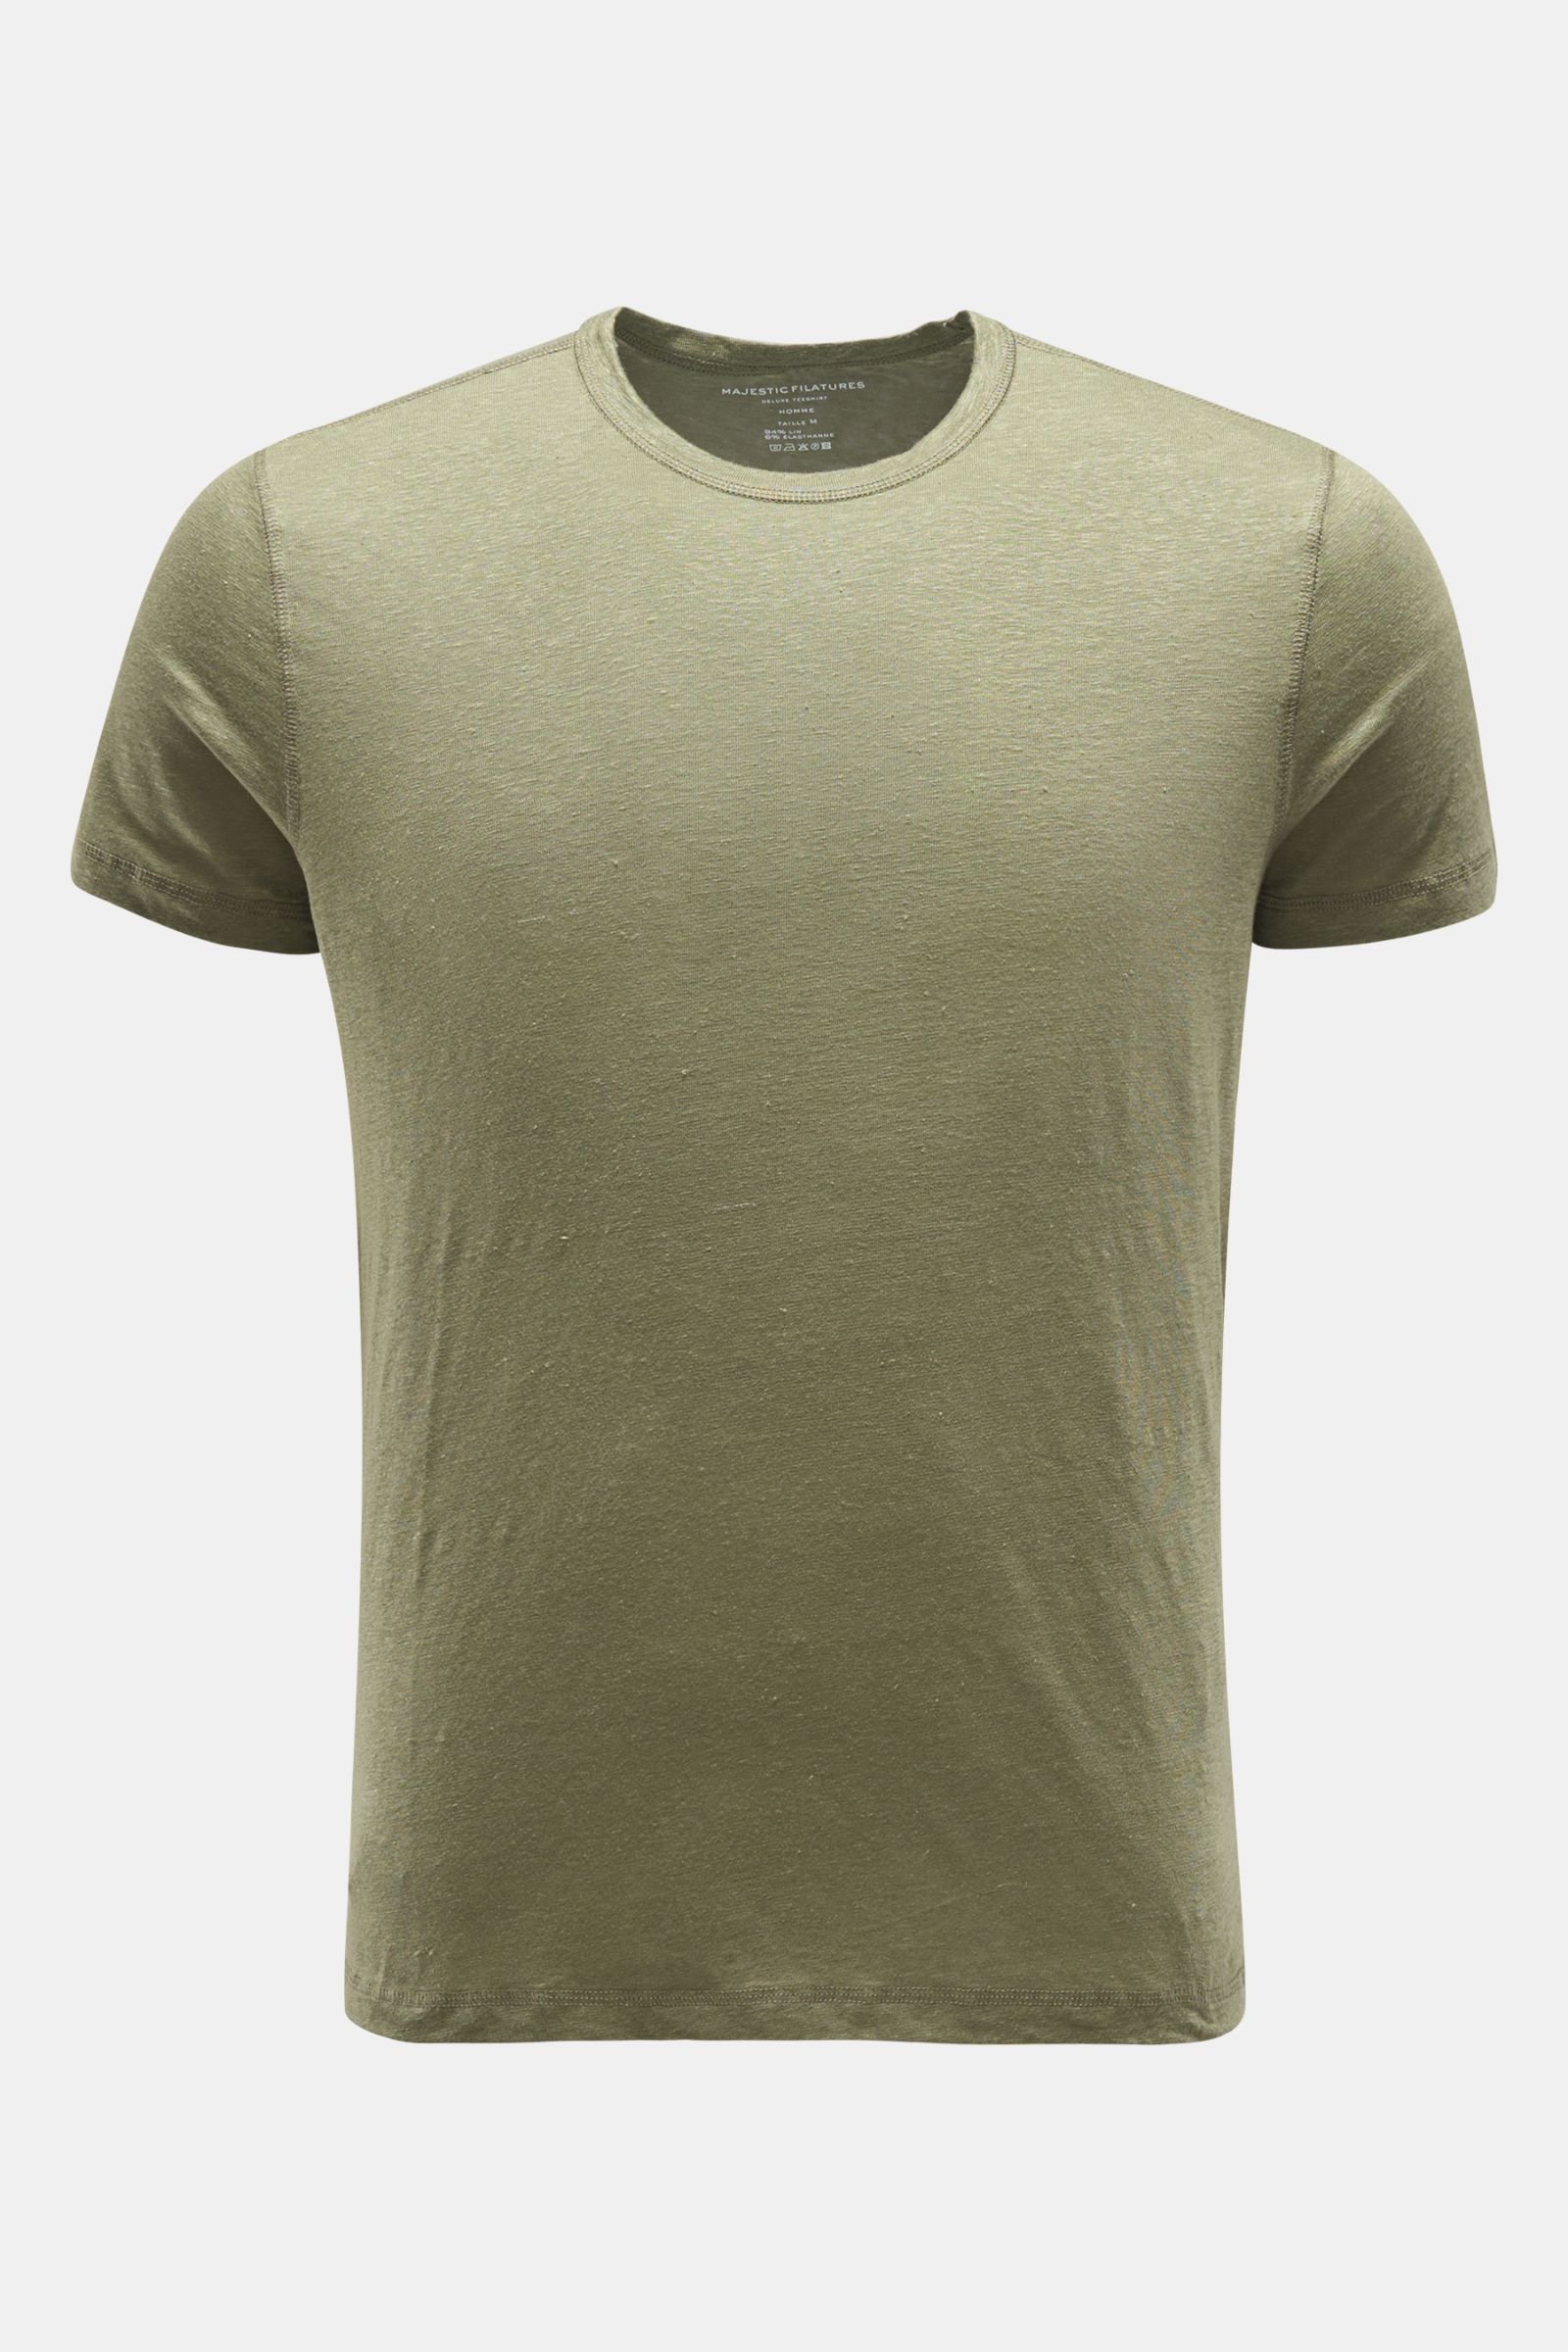 Leinen Rundhals-T-Shirt graugrün